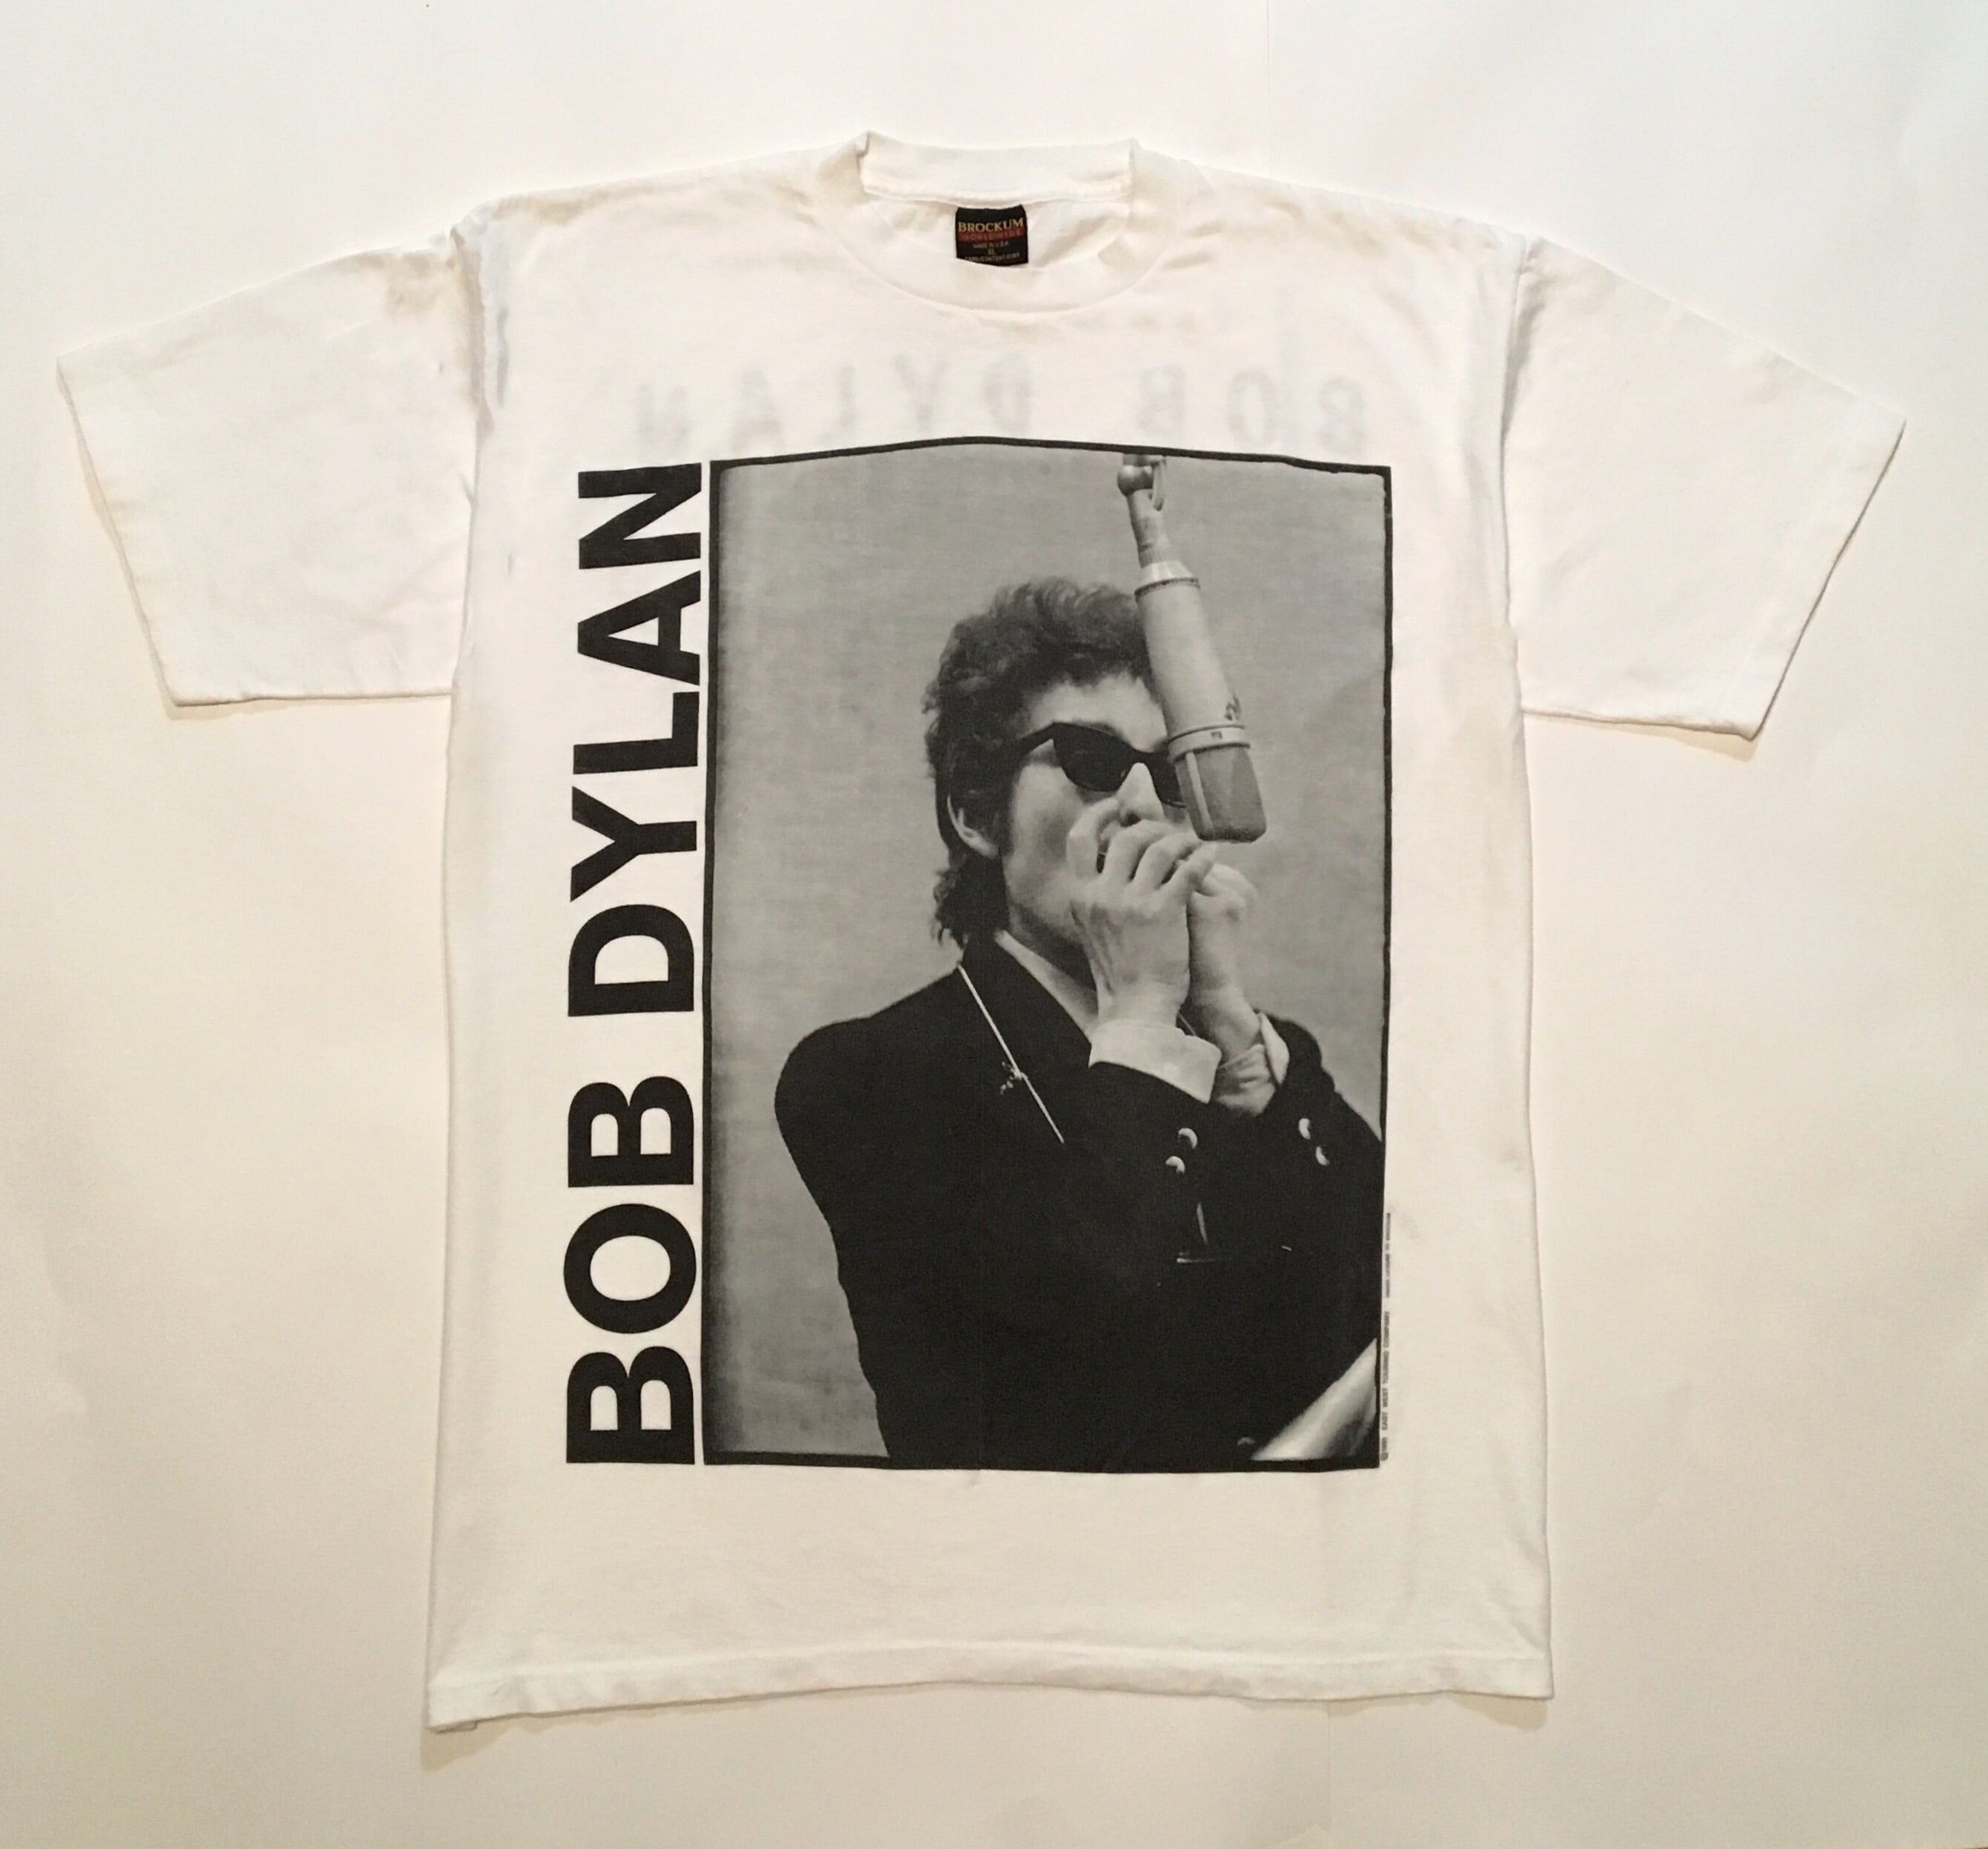 ★1988 BOB DYLAN ボブディラン Tシャツ(XL)ヴィンテージ